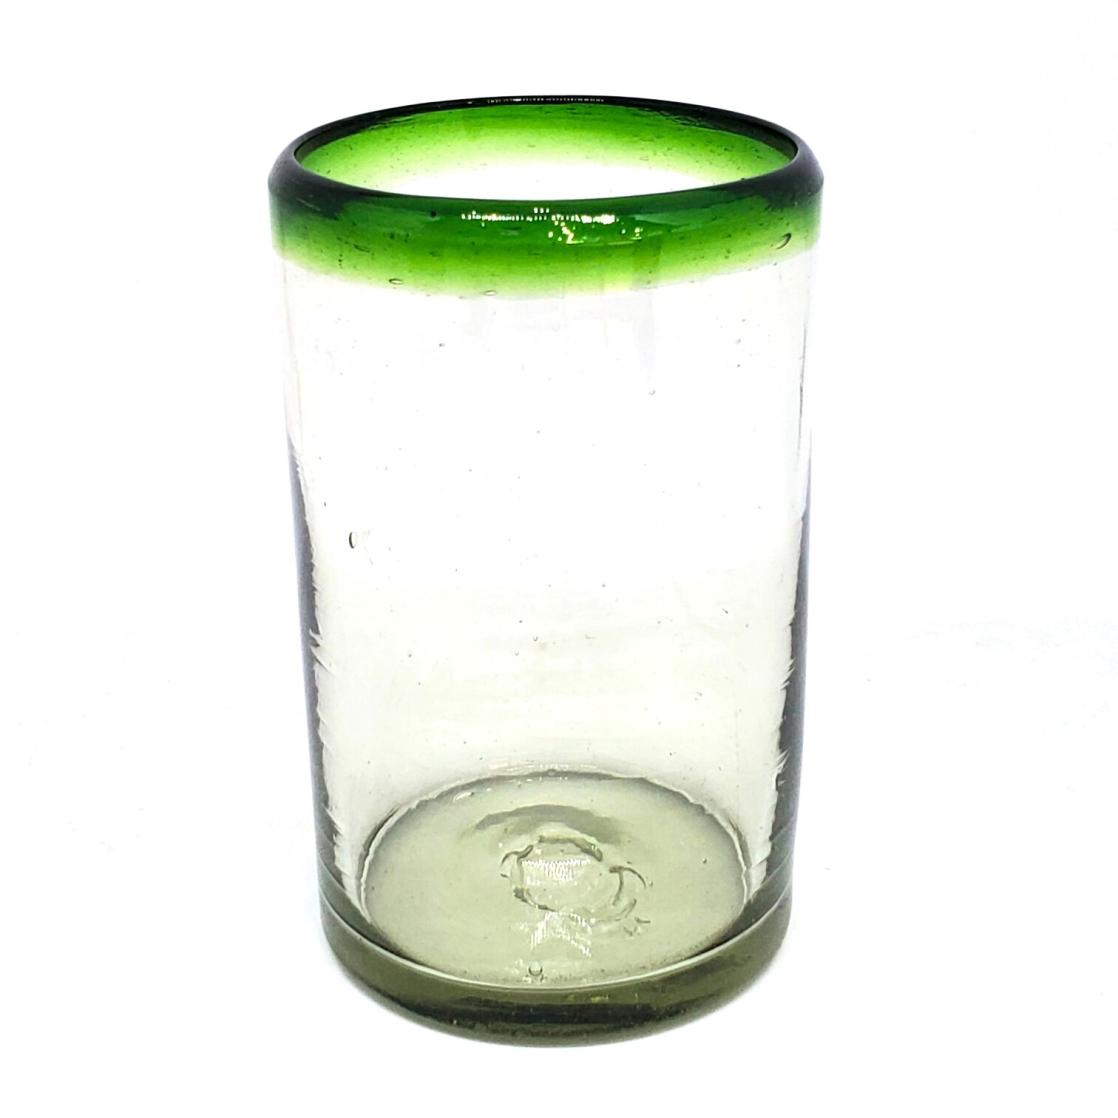 Ofertas / Juego de 6 vasos grandes con borde verde esmeralda / Éstos artesanales vasos le darán un toque clásico a su bebida favorita.